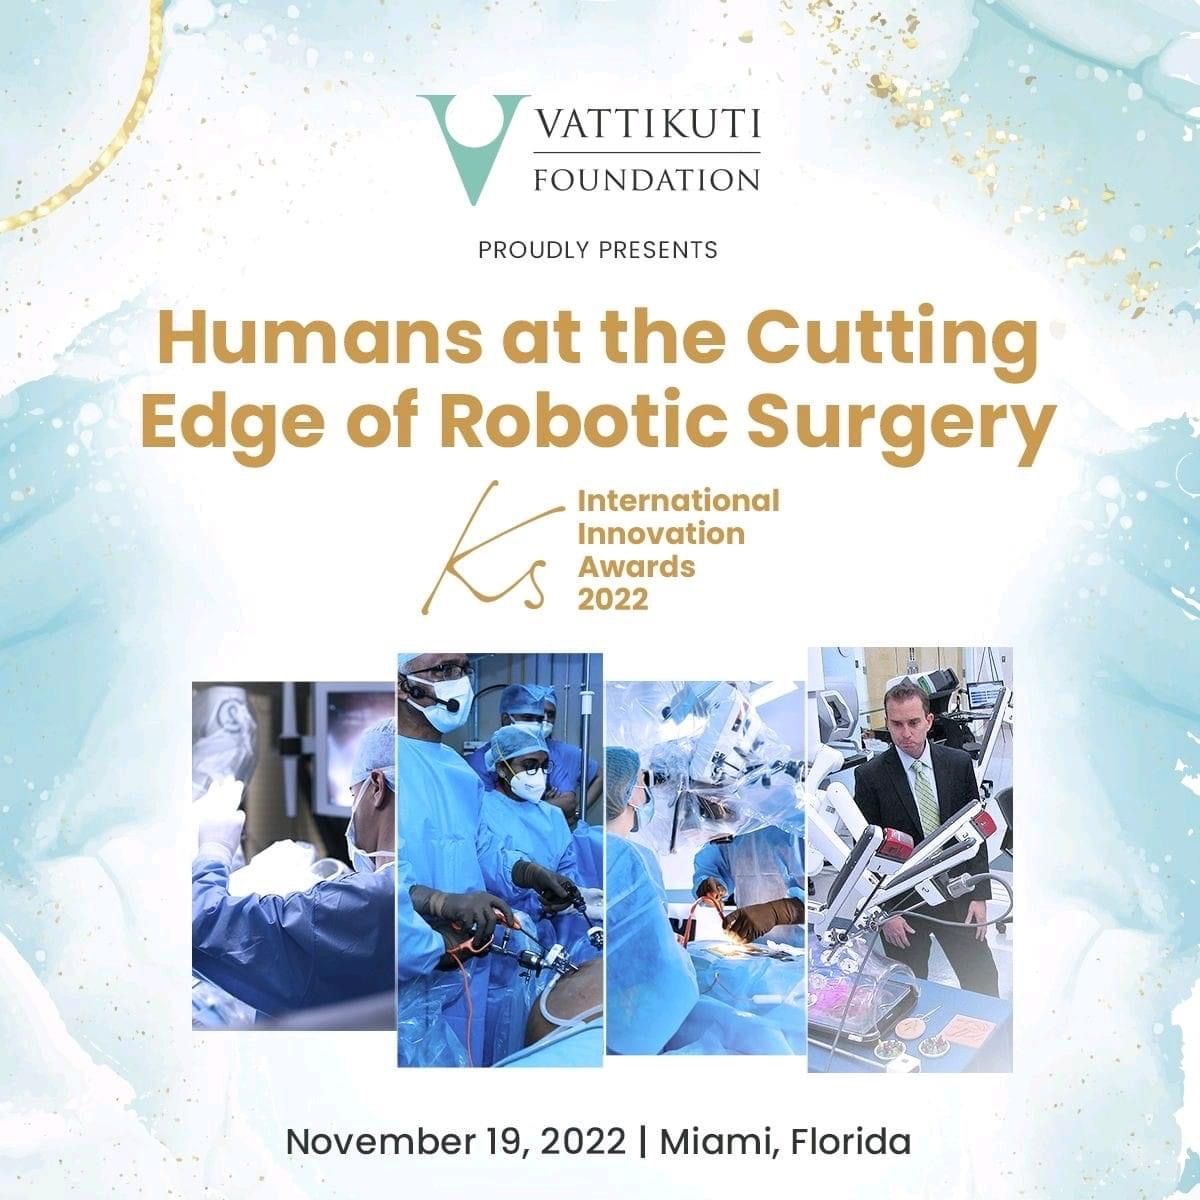 Διεθνές βραβείο καινοτομίας στη ρομποτική χειρουργική στα KS International Awards